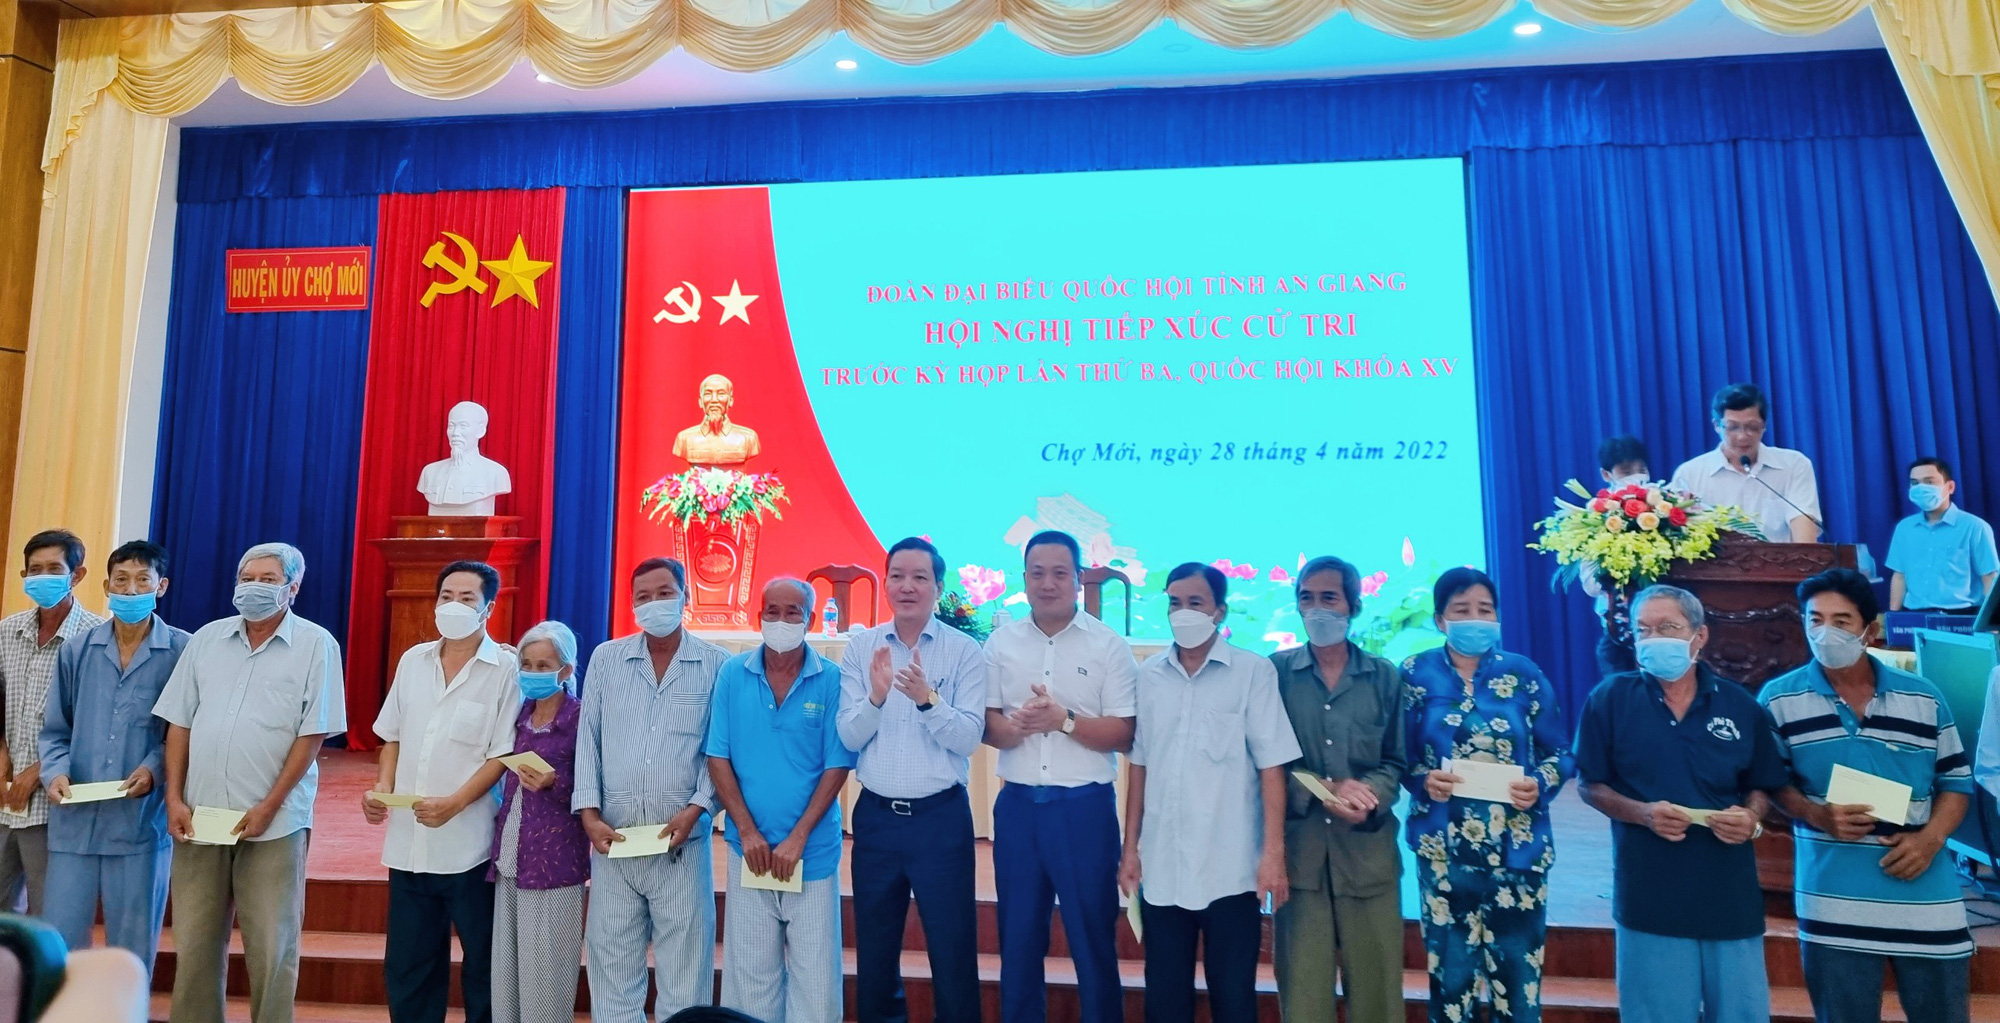 Chủ tịch Hội NDVN Lương Quốc Đoàn thăm, tặng quà gia đình chính sách, hộ nghèo tại An Giang - Ảnh 2.